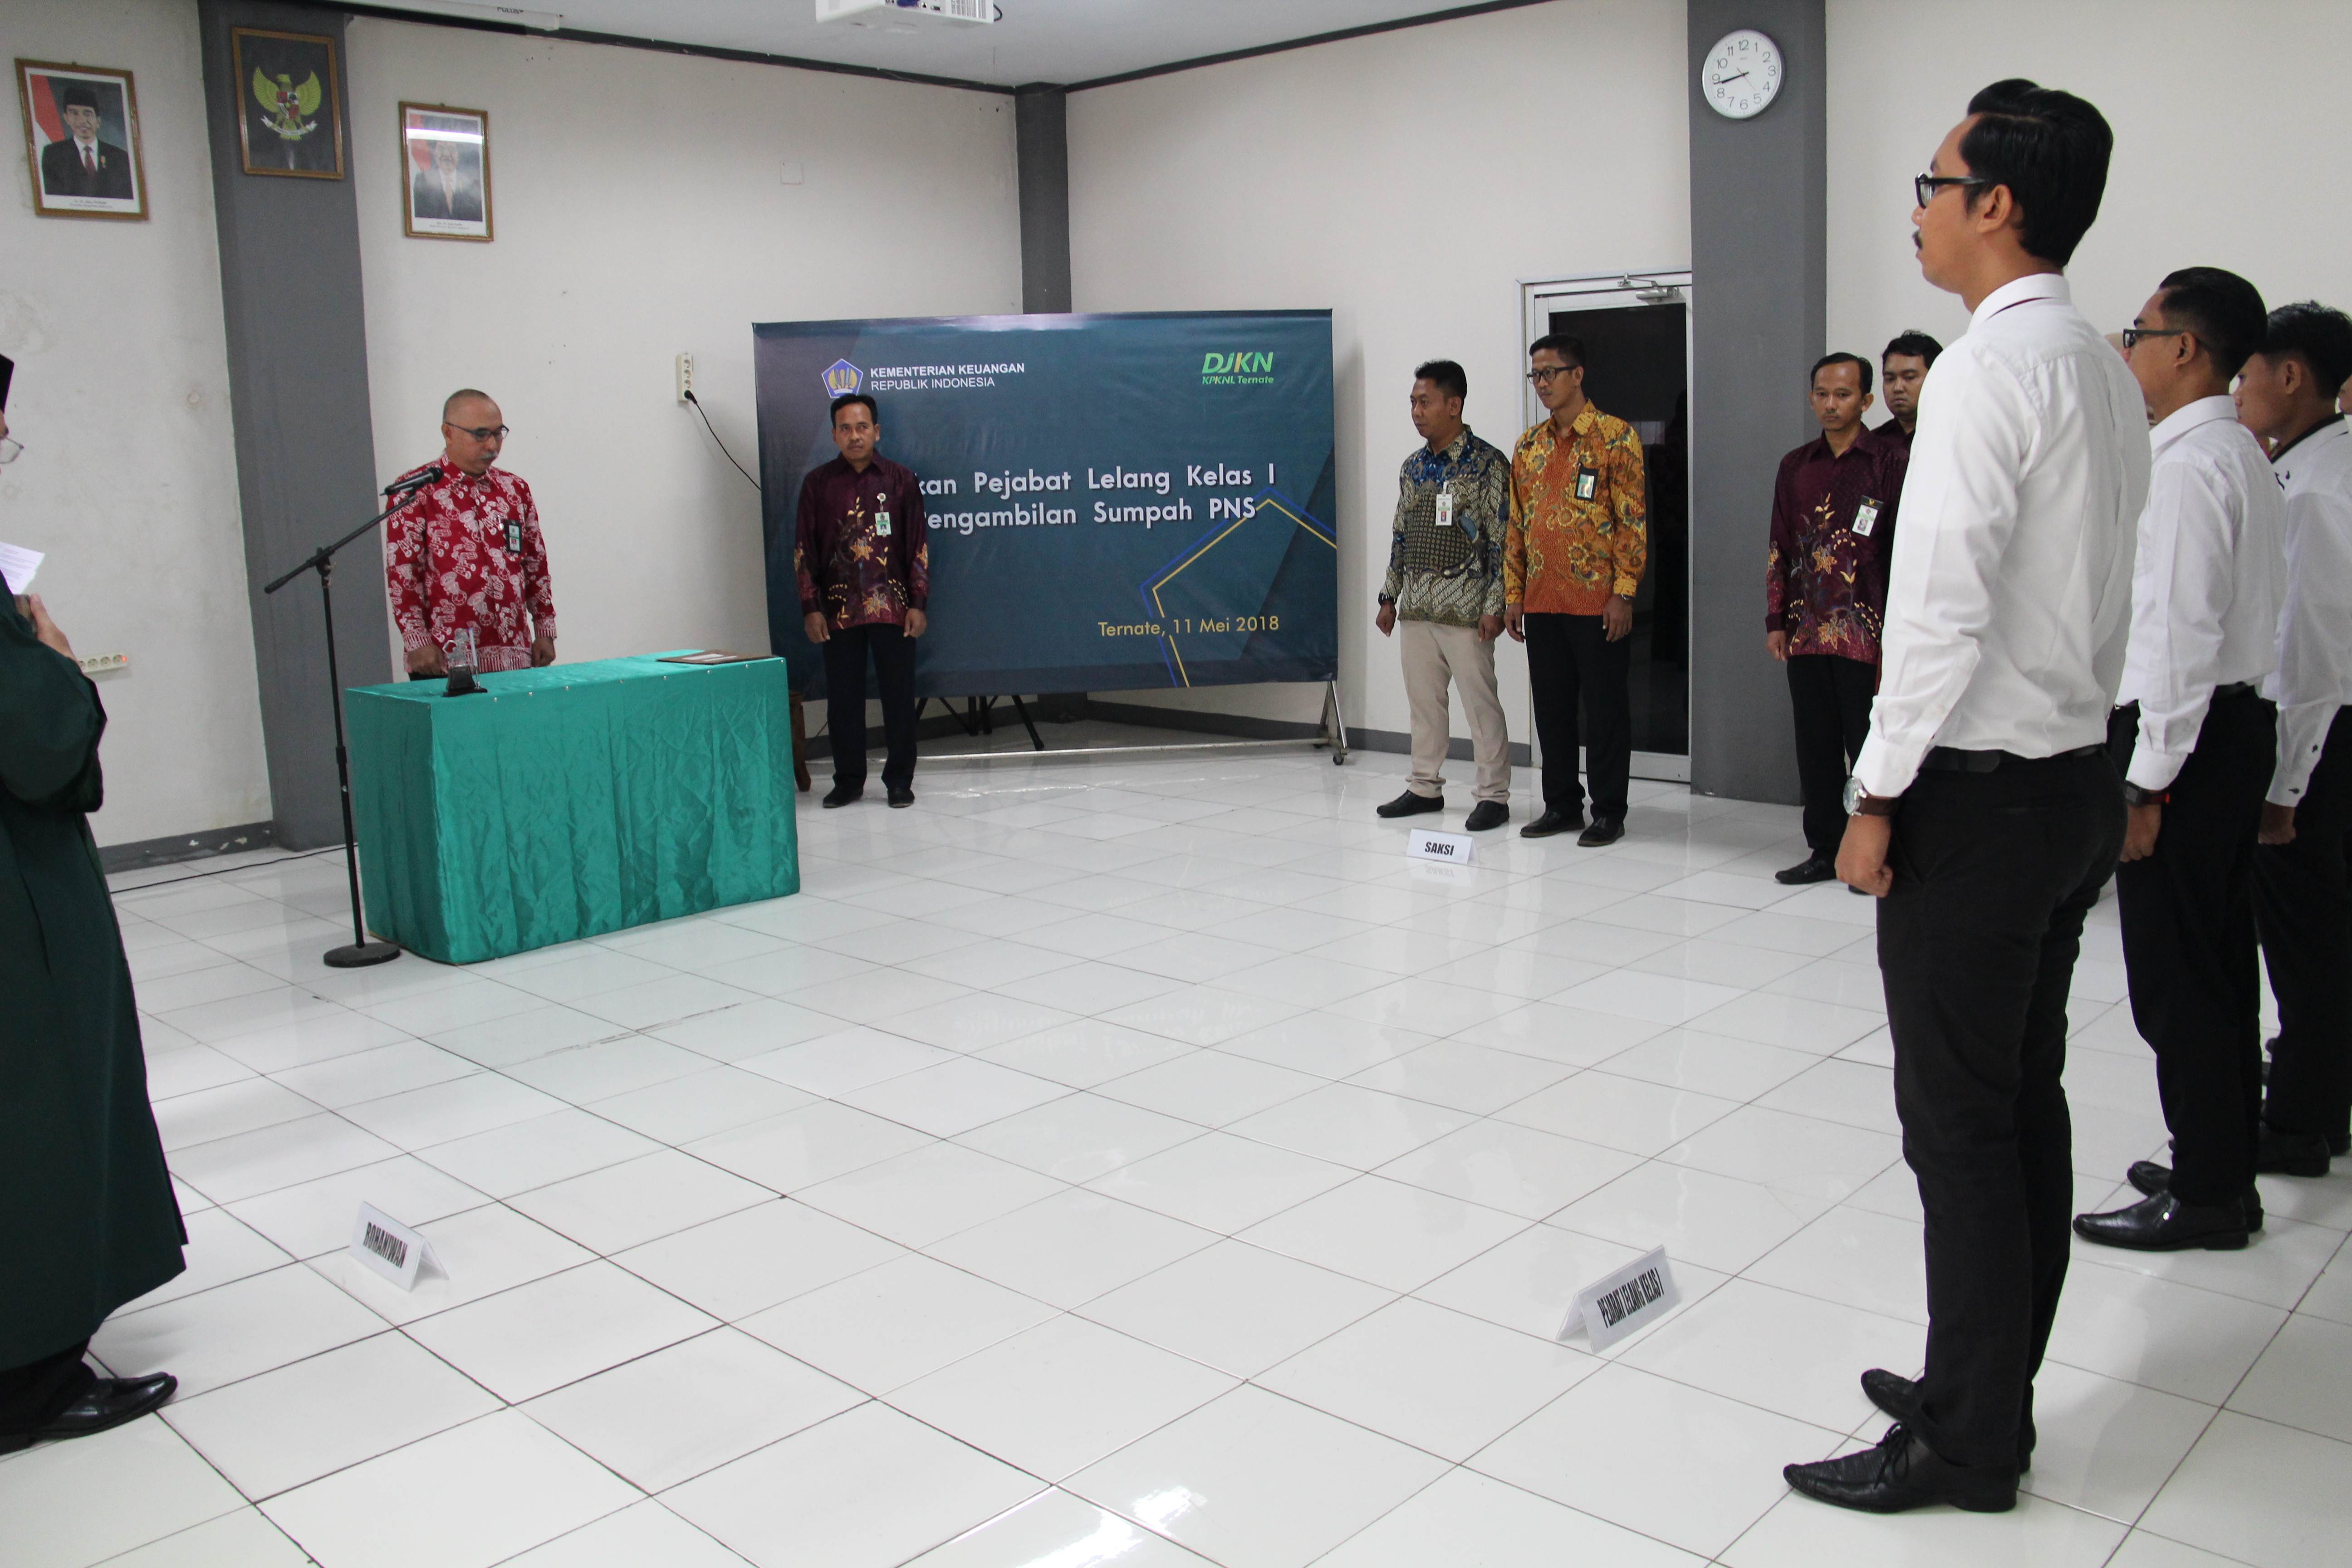 Kepala Kanwil DJKN Suluttenggomalut Lantik Pejabat Lelang dan PNS KPKNL Ternate